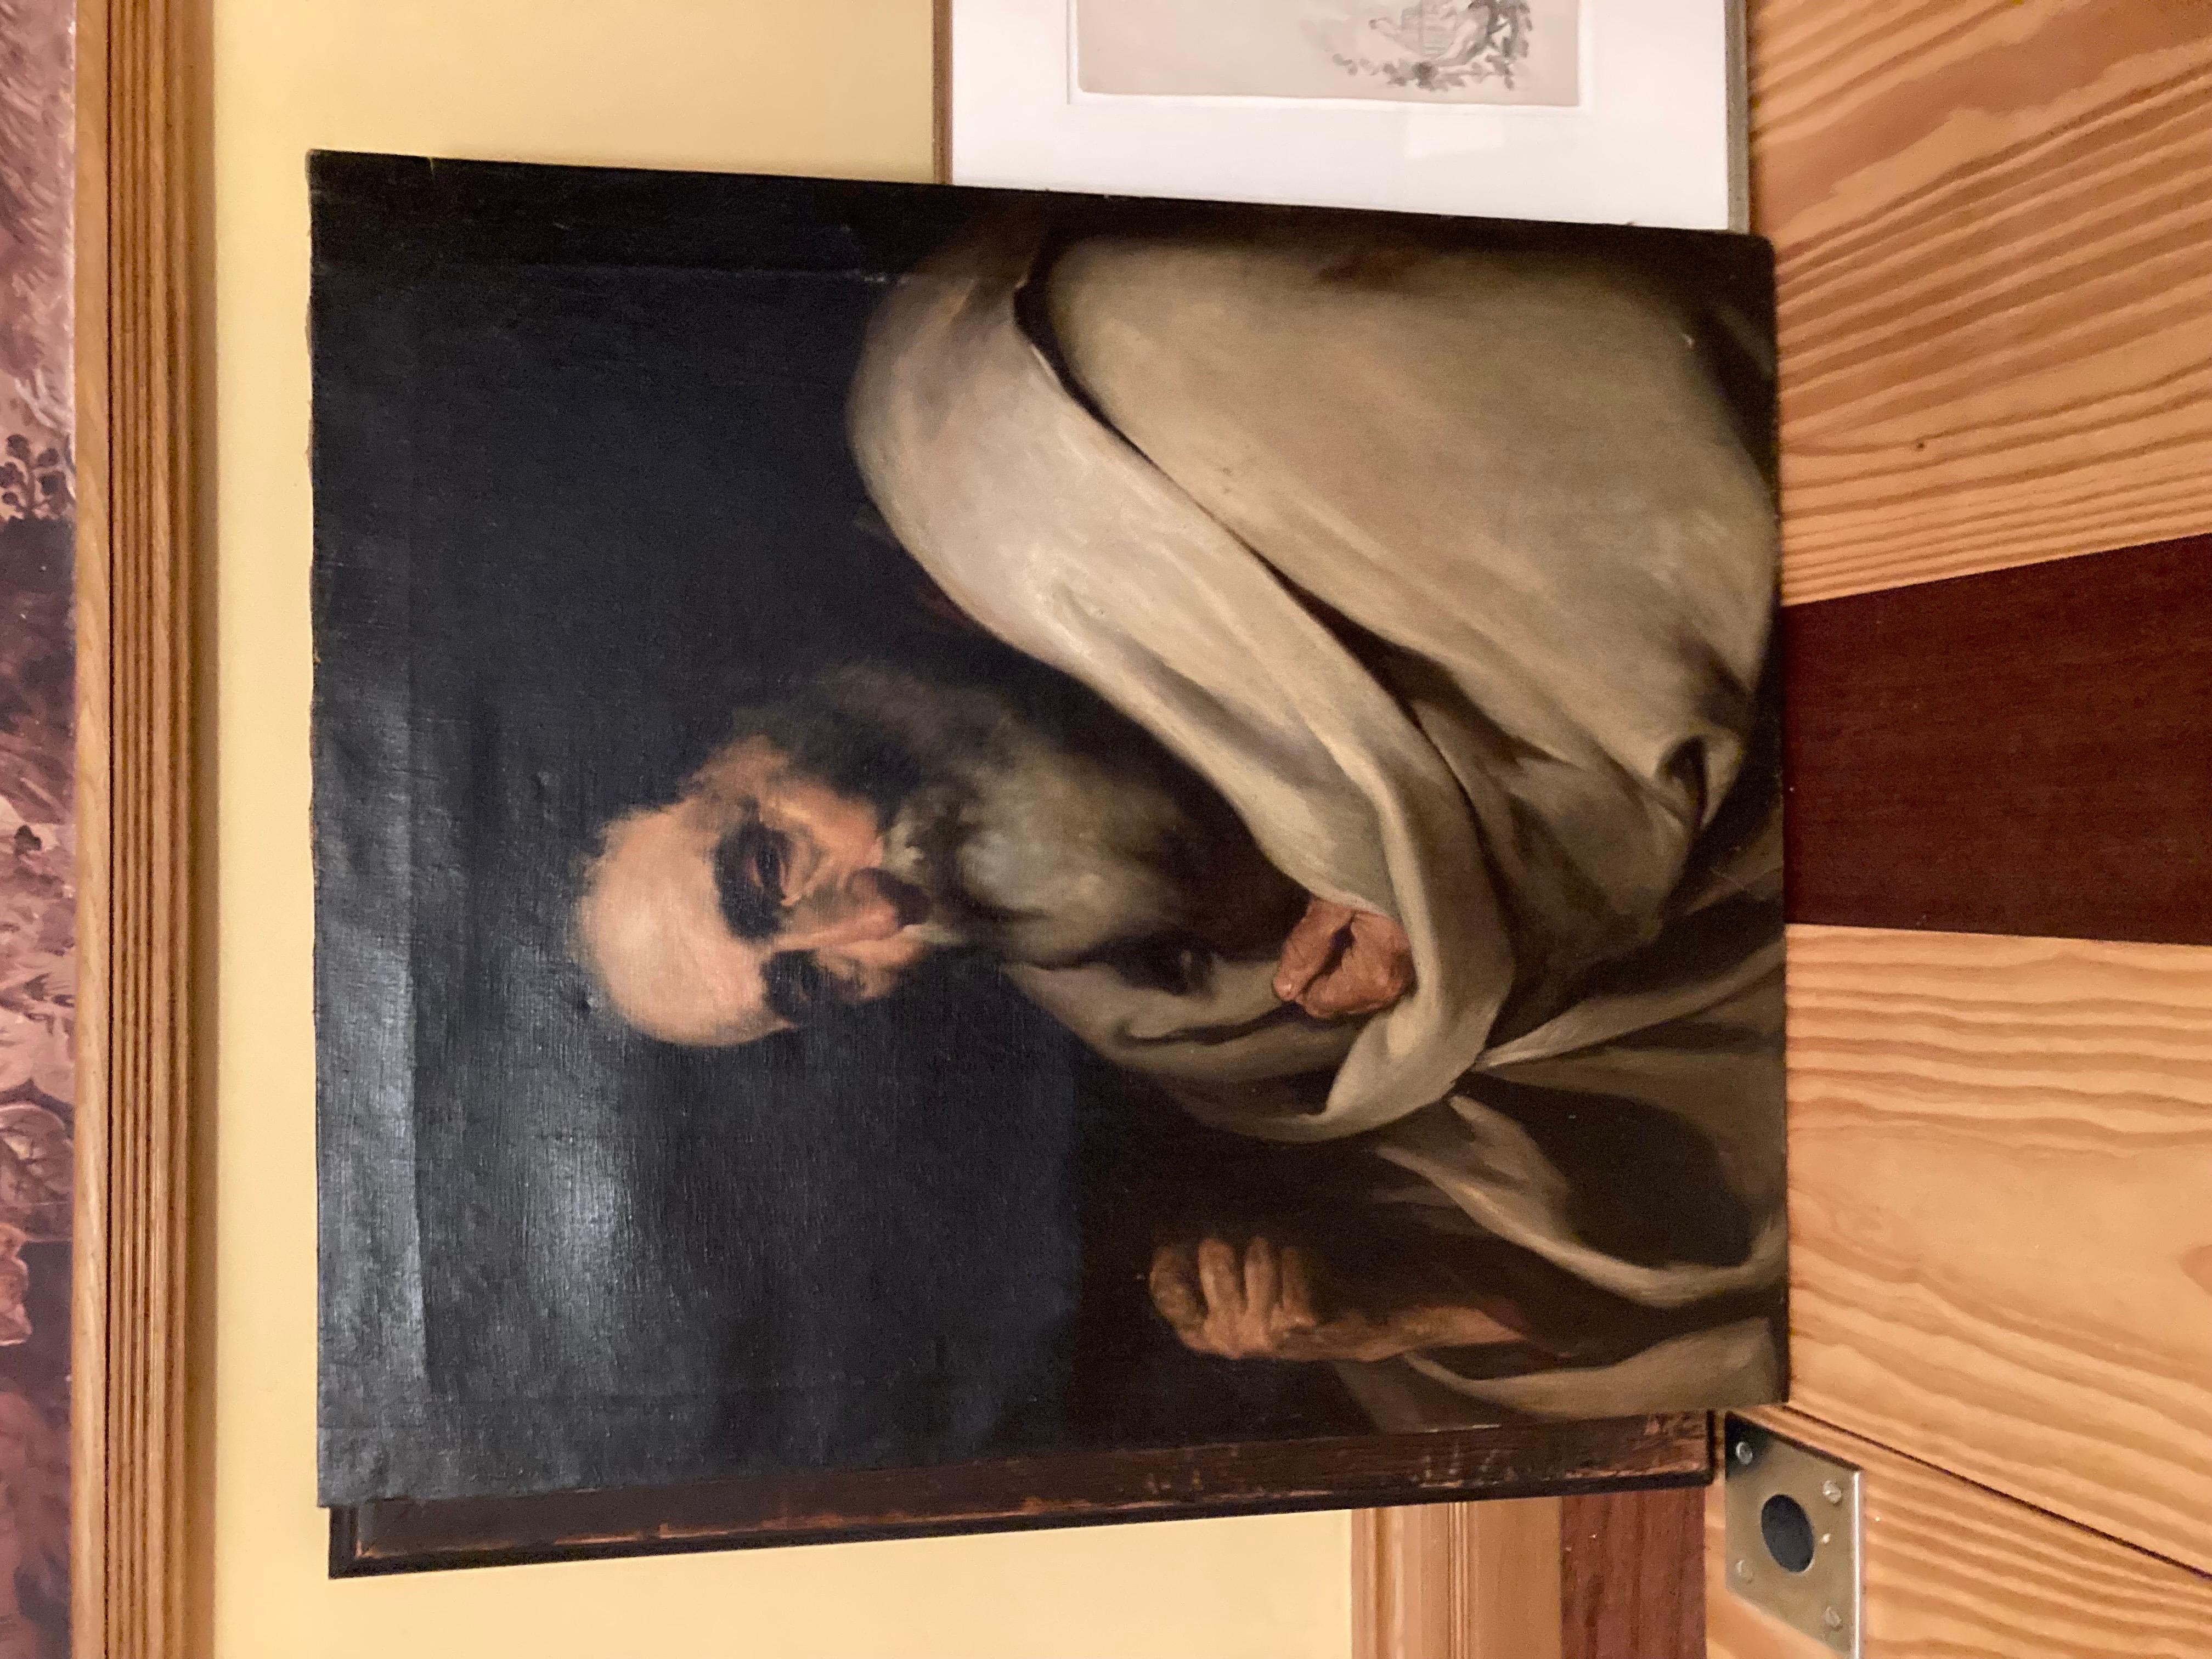 Alter Meister
Ein Öldruck nach einem Gemälde von Jusepe de Ribera im Museo del Prado, Spanien. Dies ist ein früher Druck nach dem Original. 